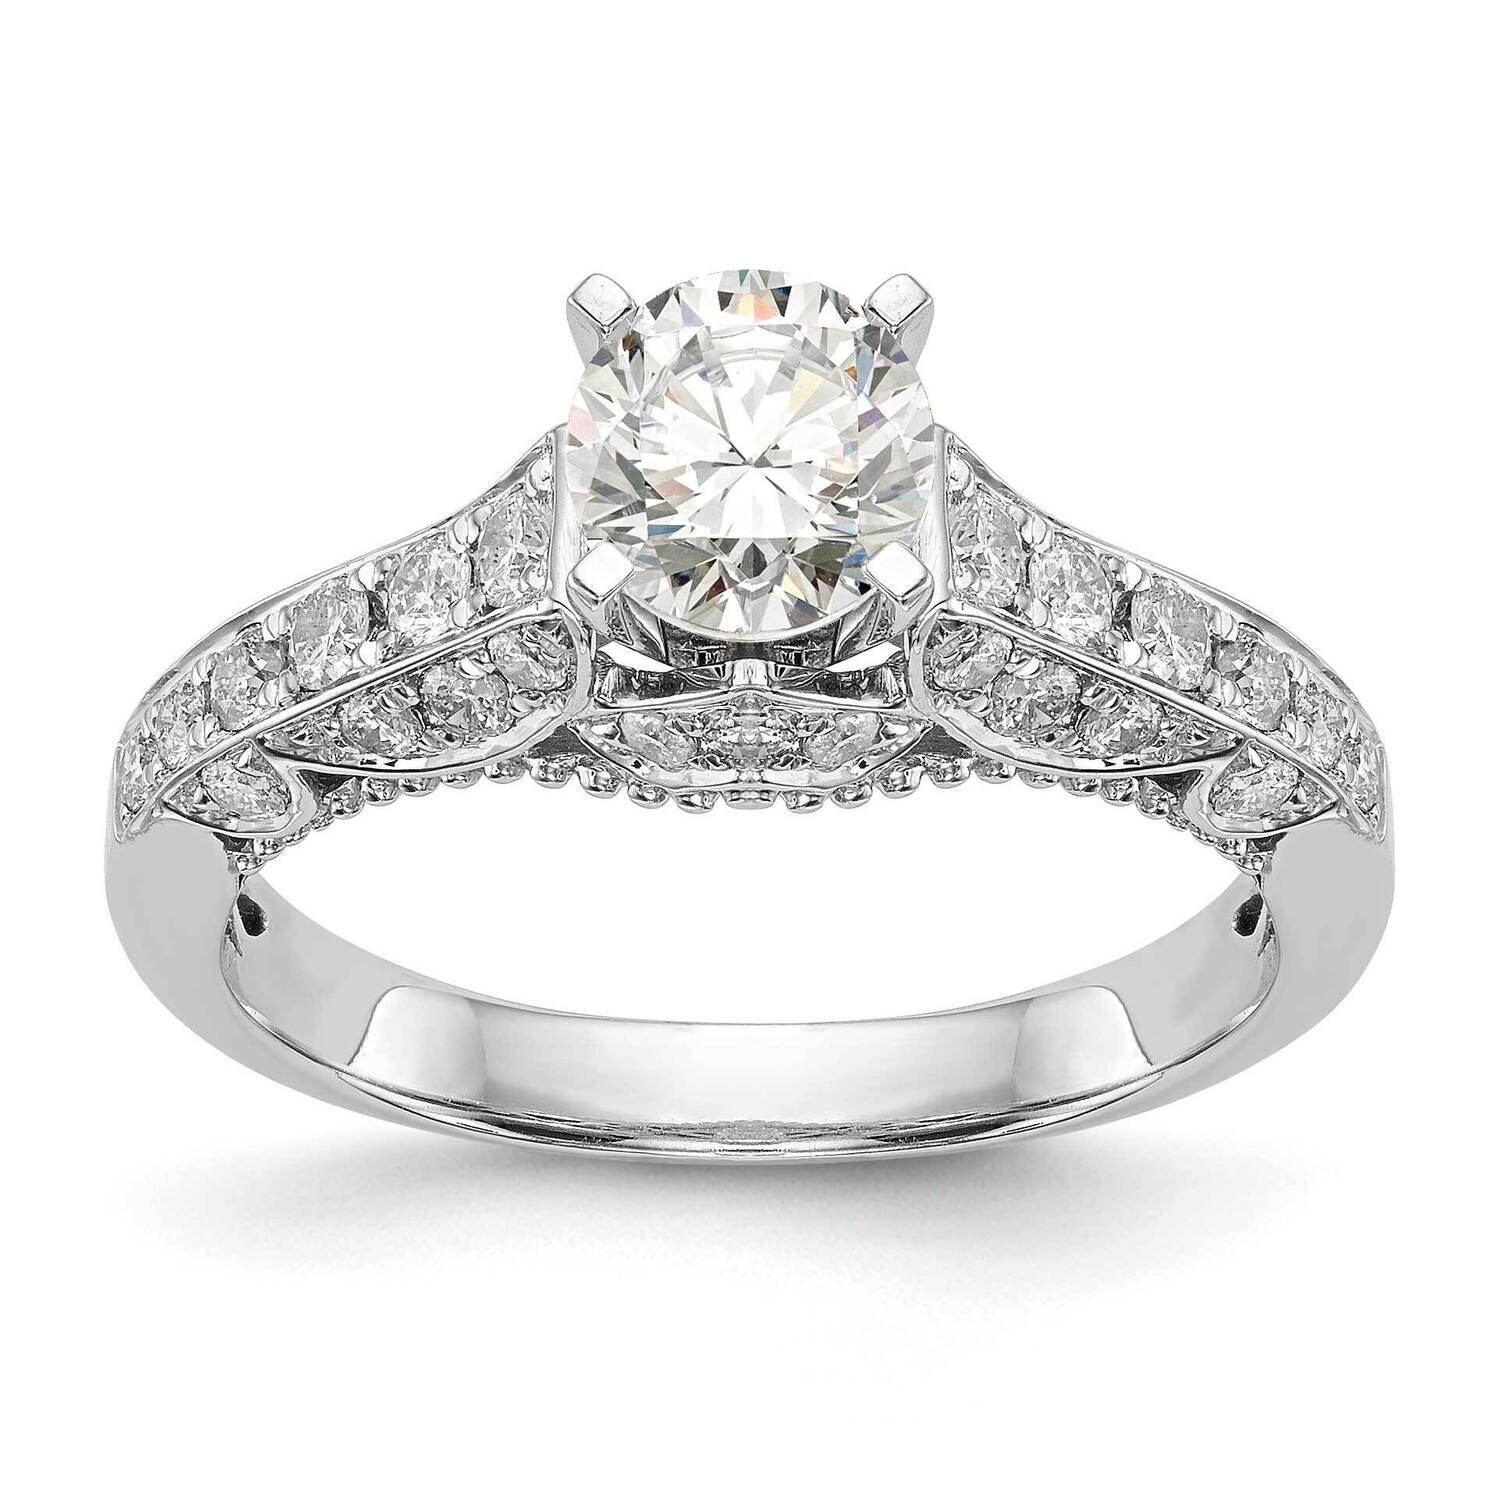 Peg Set 5/8 Carat Diamond Semi-Mount Engagement Ring 14k White Gold RM2852E-062-WAA